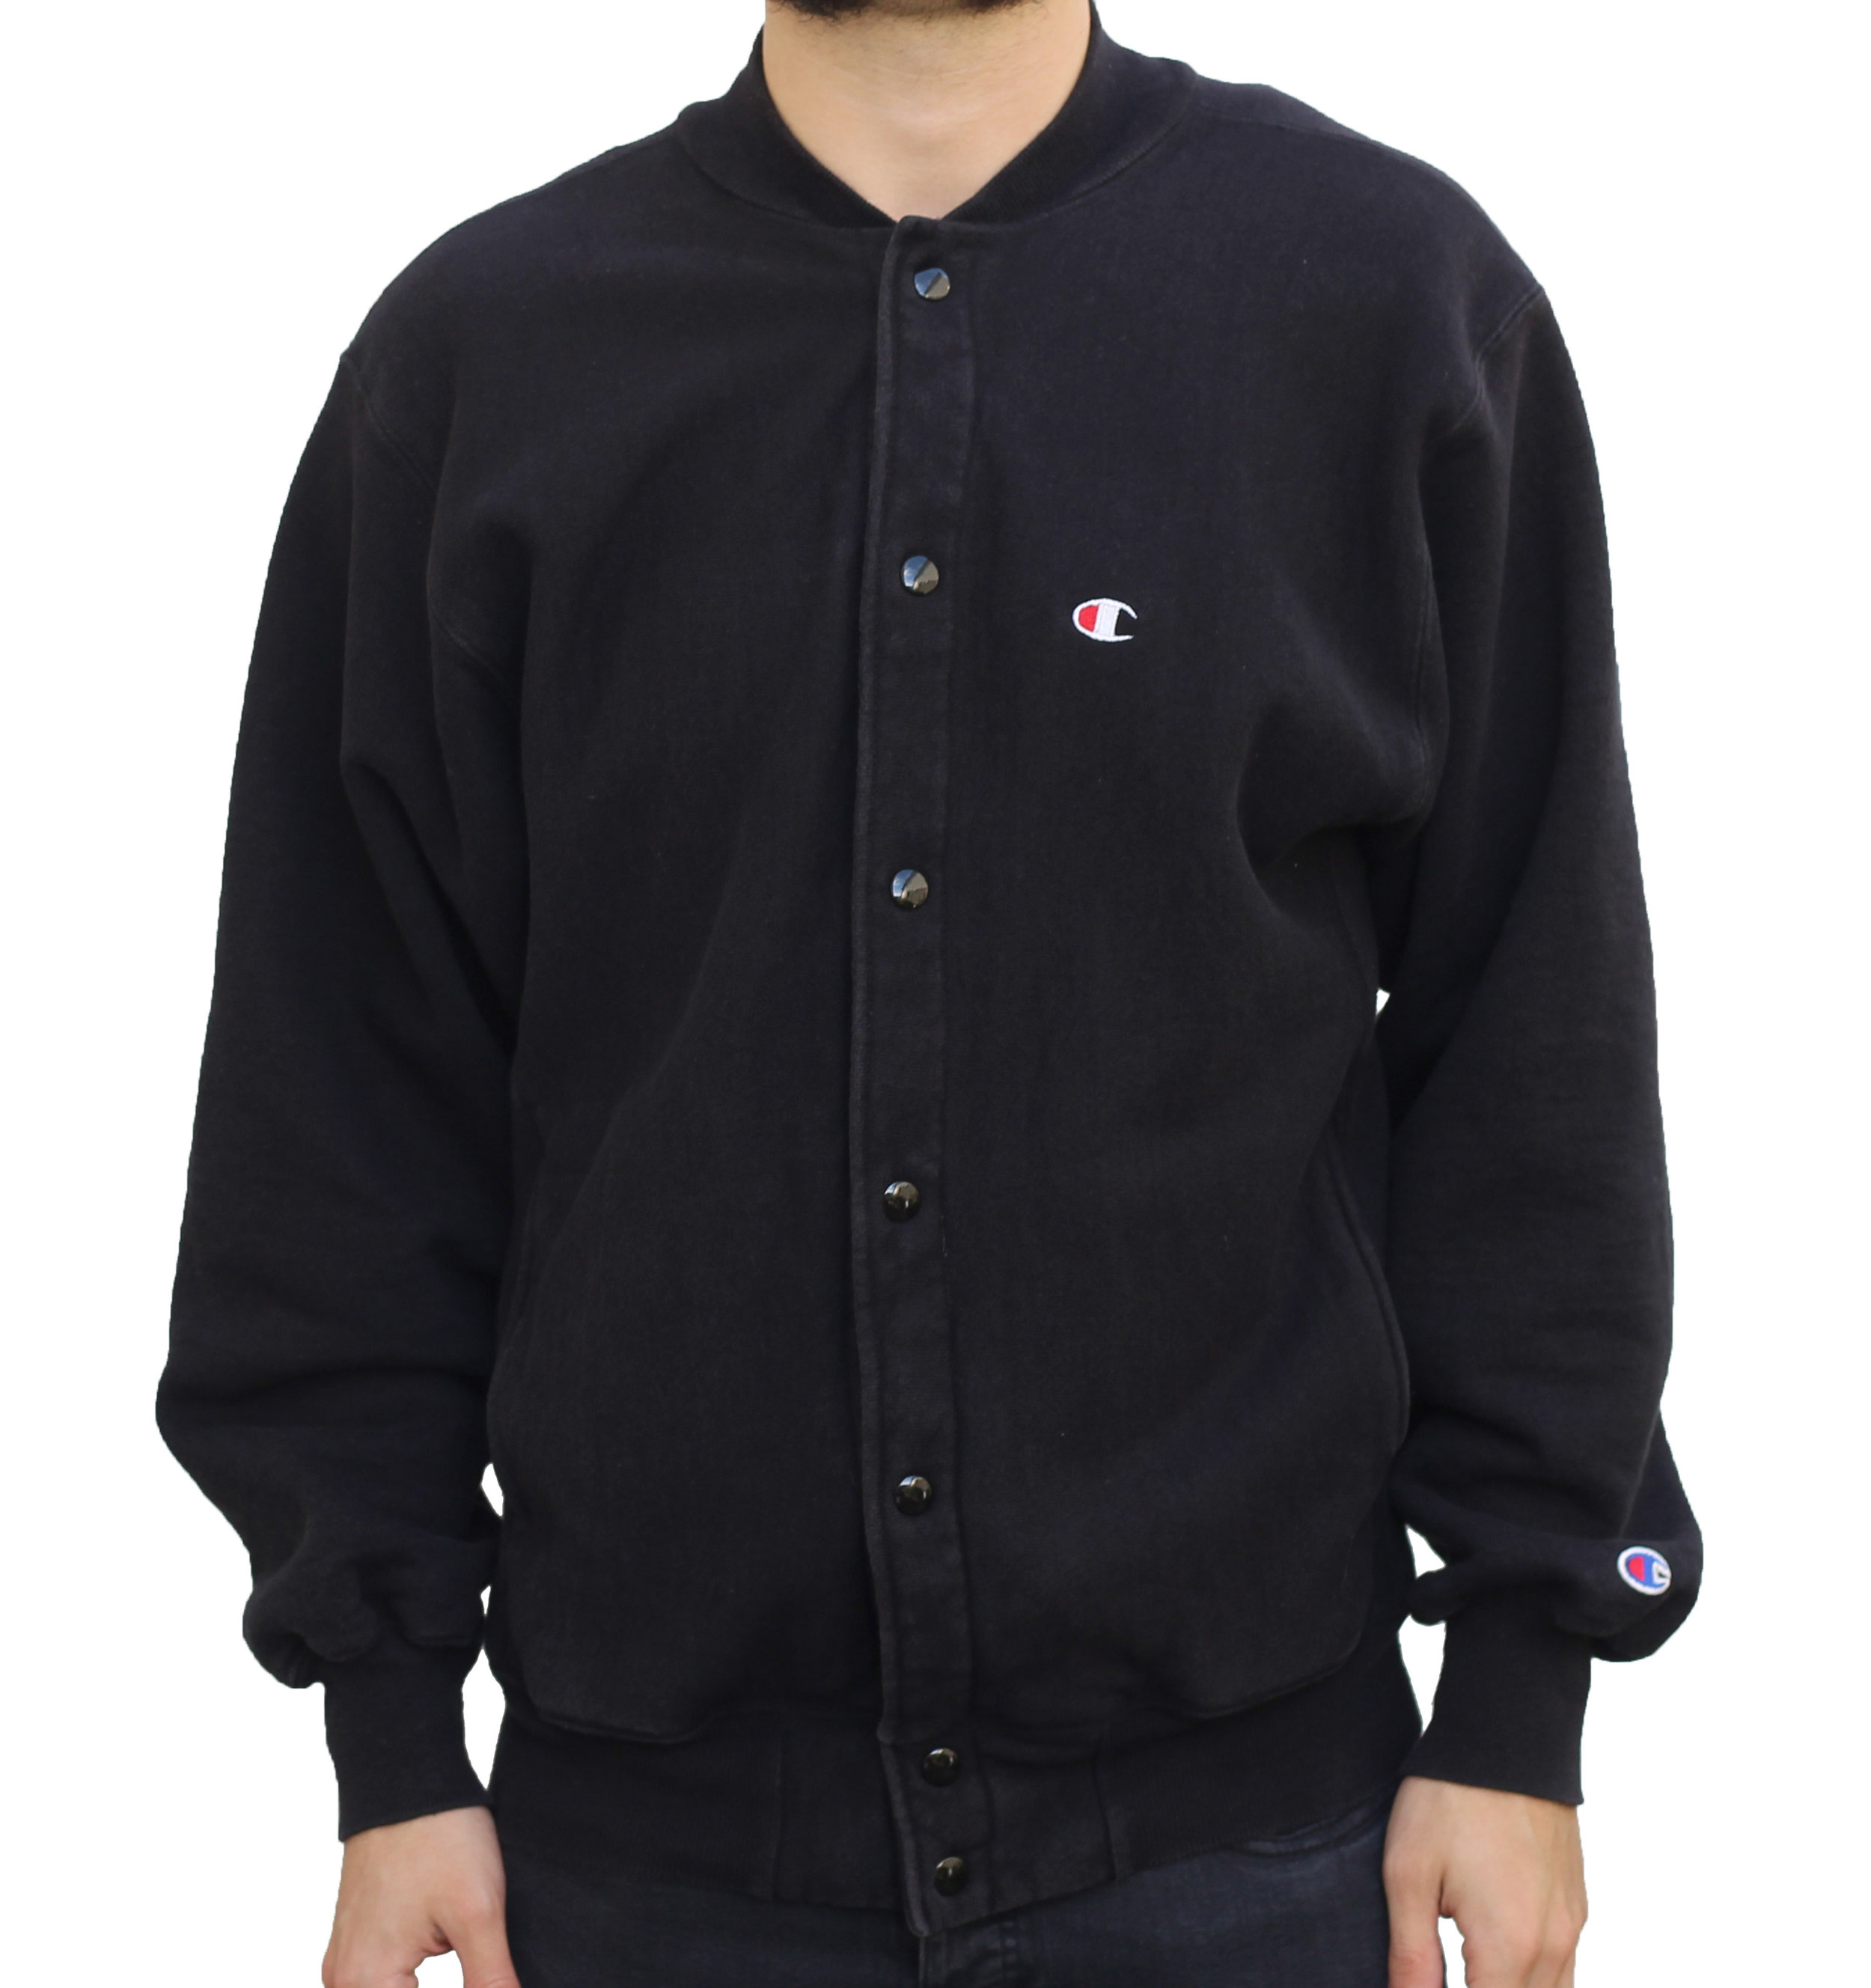 Vintage Champion Reverse Weave Black Jacket (Size M) — Roots